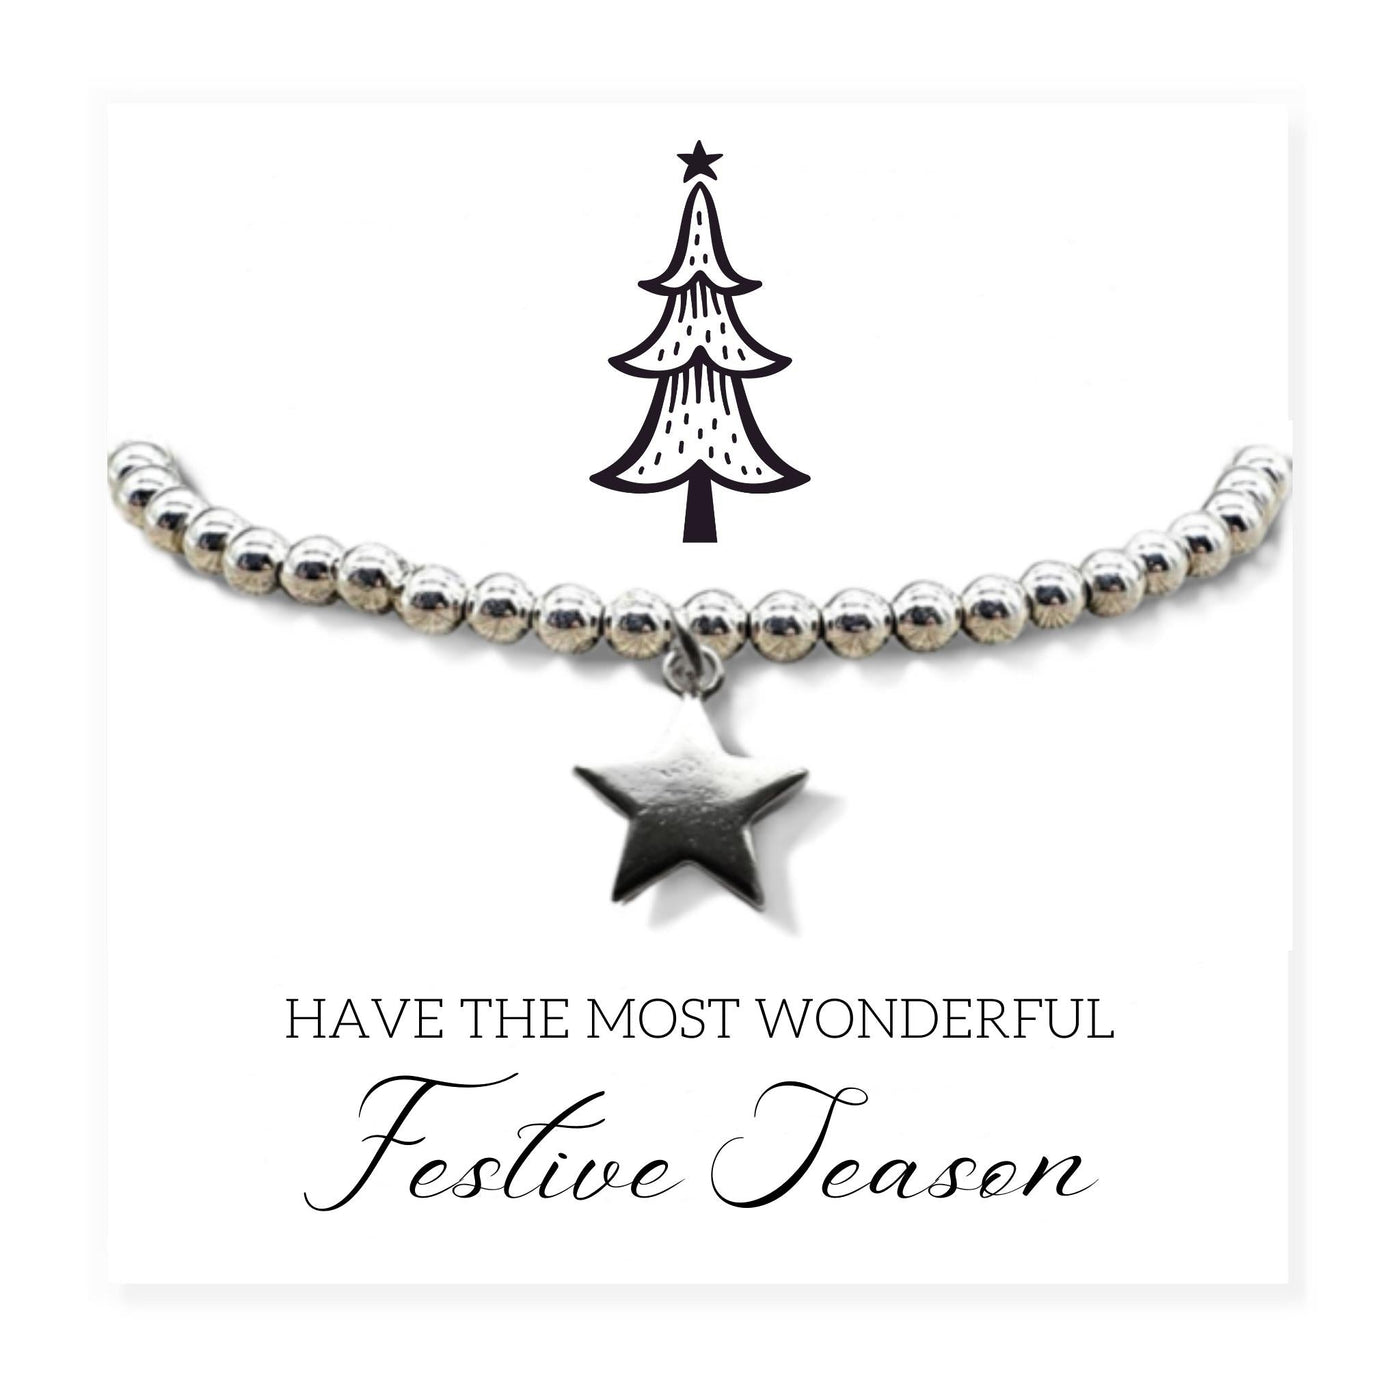 Silver Star Beaded Bracelet - Festive Season Card Gift